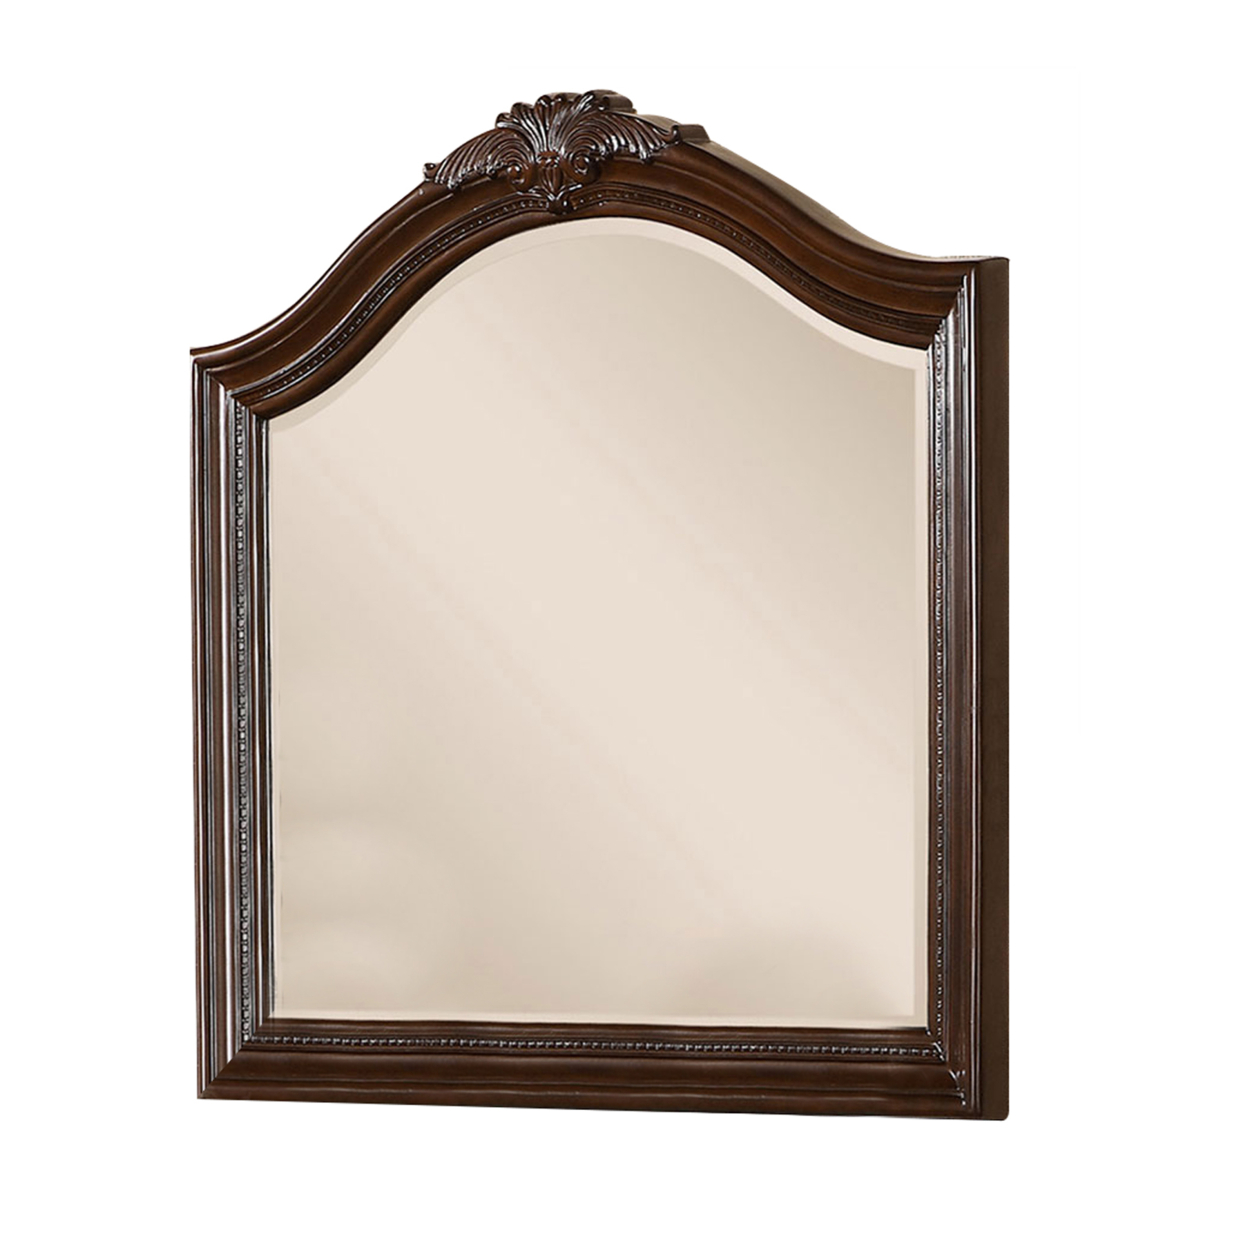 Bellefonte Baroque Style Mirror In Brown Cherry Finish- Saltoro Sherpi